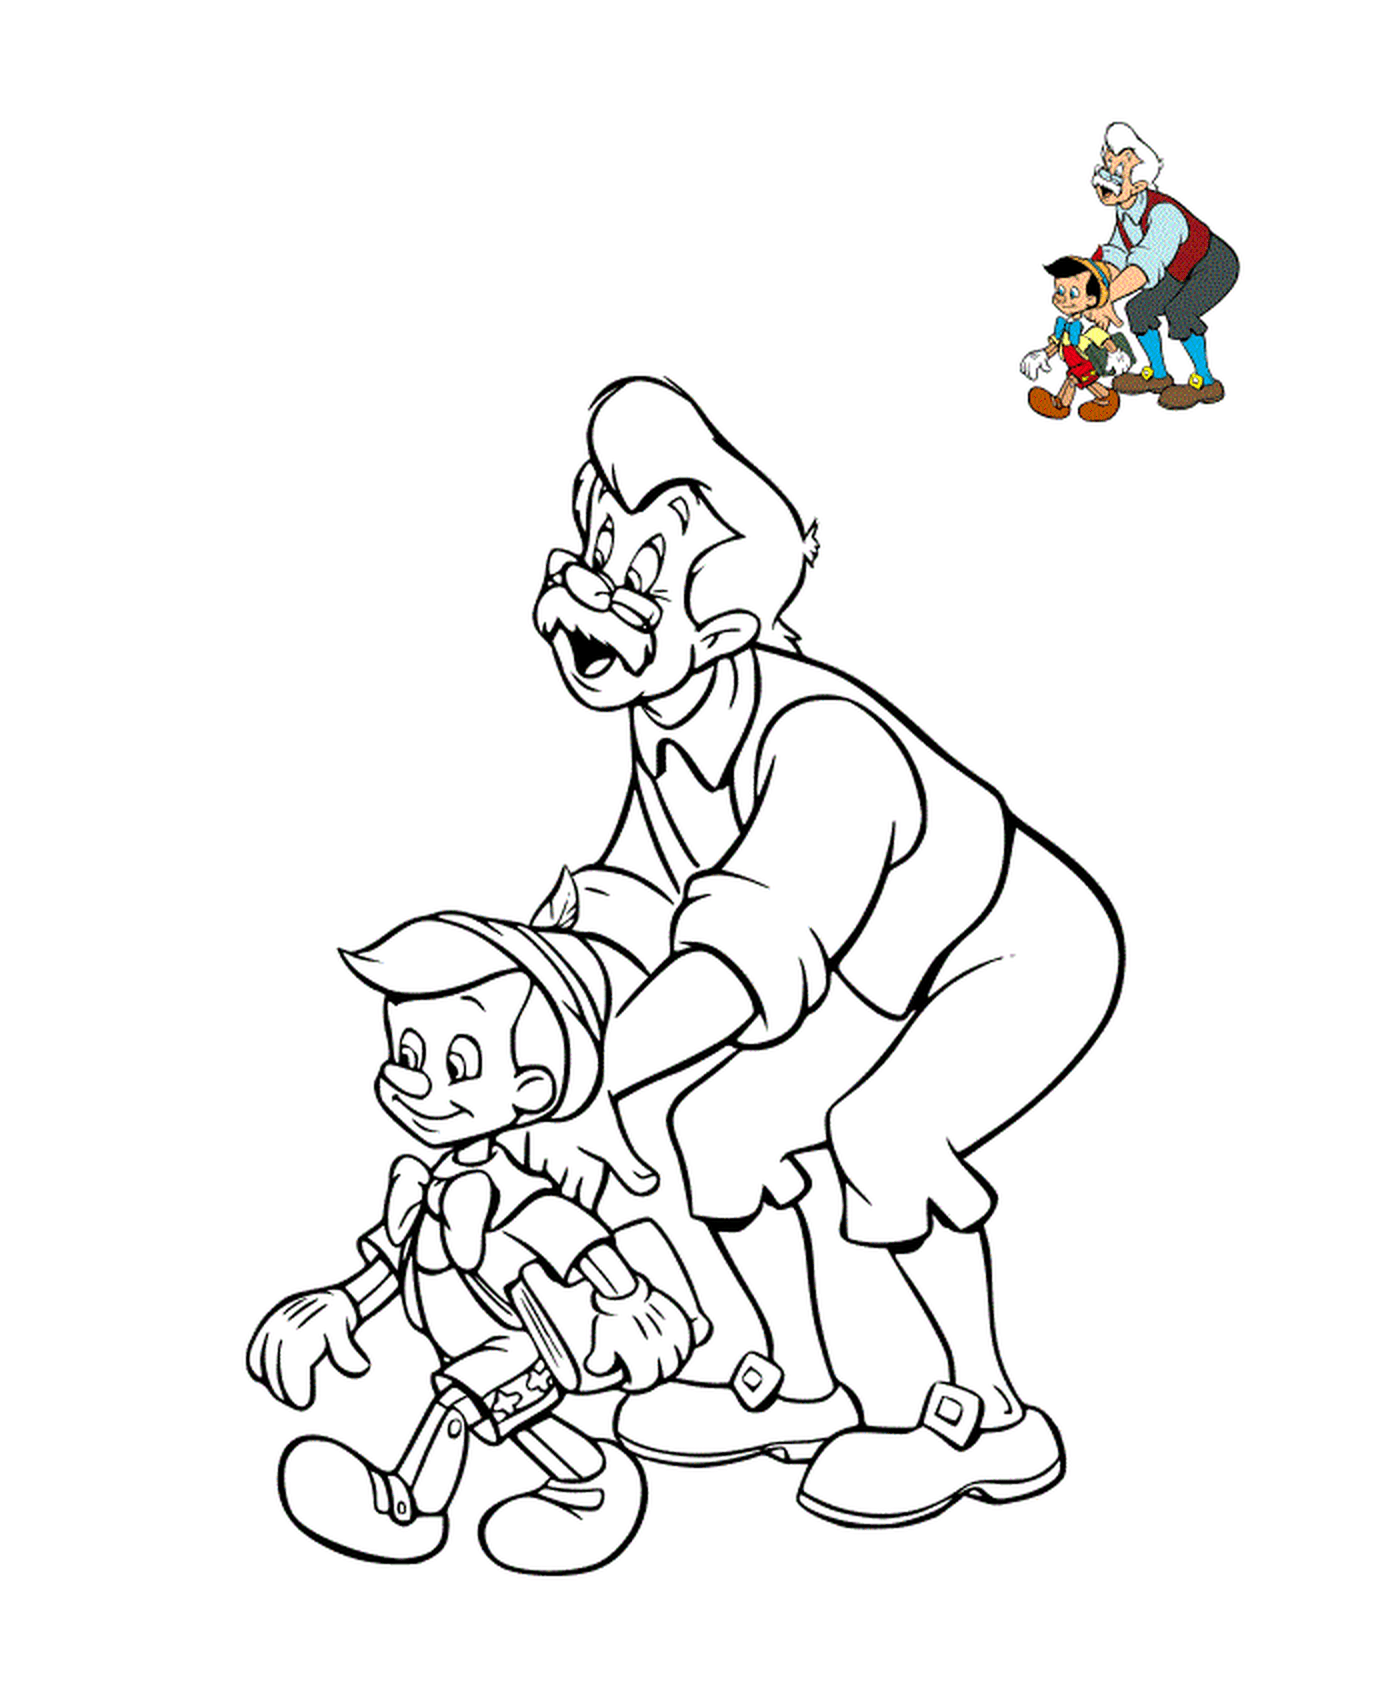  Geppetto con su hijo, Pinocho 